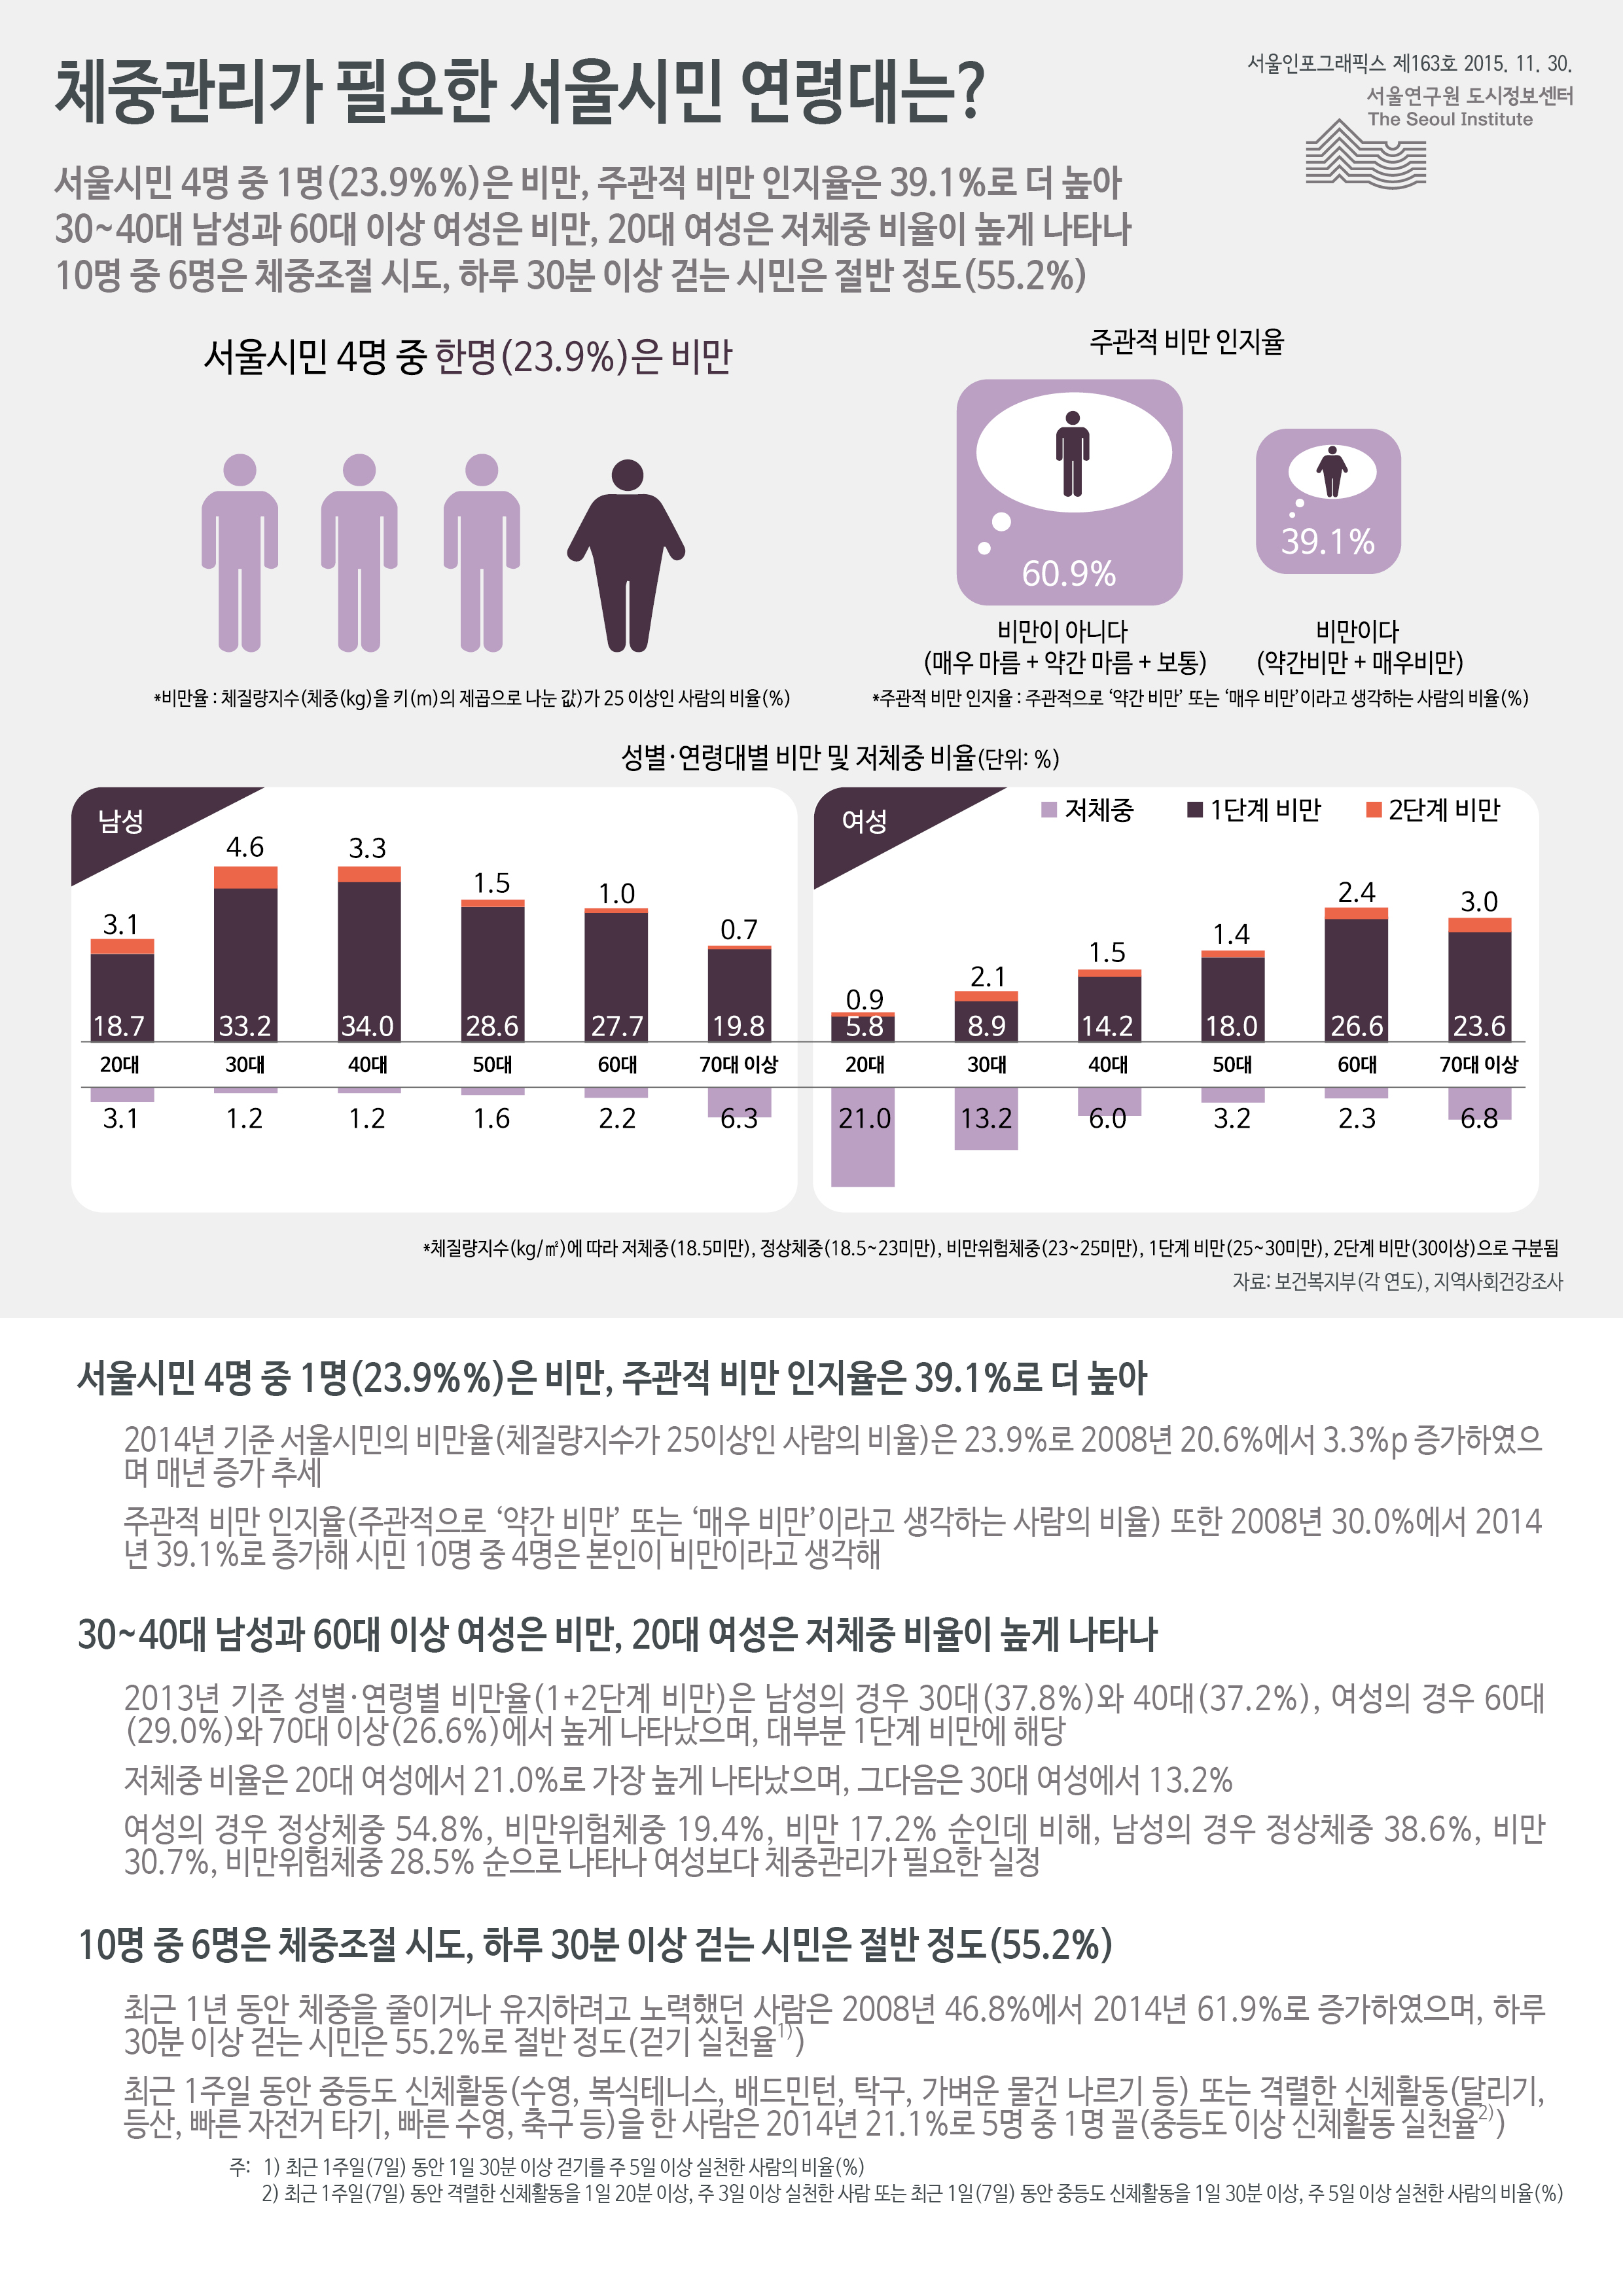 체중관리가 필요한 서울시민 연령대는? 제163호 2015년 11월 30일 서울시민 4명 중 1명(23.9%%)은 비만, 주관적 비만 인지율은 39.1%로 더 높음. 30~40대 남성과 60대 이상 여성은 비만, 20대 여성은 저체중 비율이 높게 나타남. 10명 중 6명은 체중조절 시도, 하루 30분 이상 걷는 시민은 절반 정도로 정리될 수 있습니다. 인포그래픽으로 제공되는 그래픽은 하단에 표로 자세히 제공됩니다.